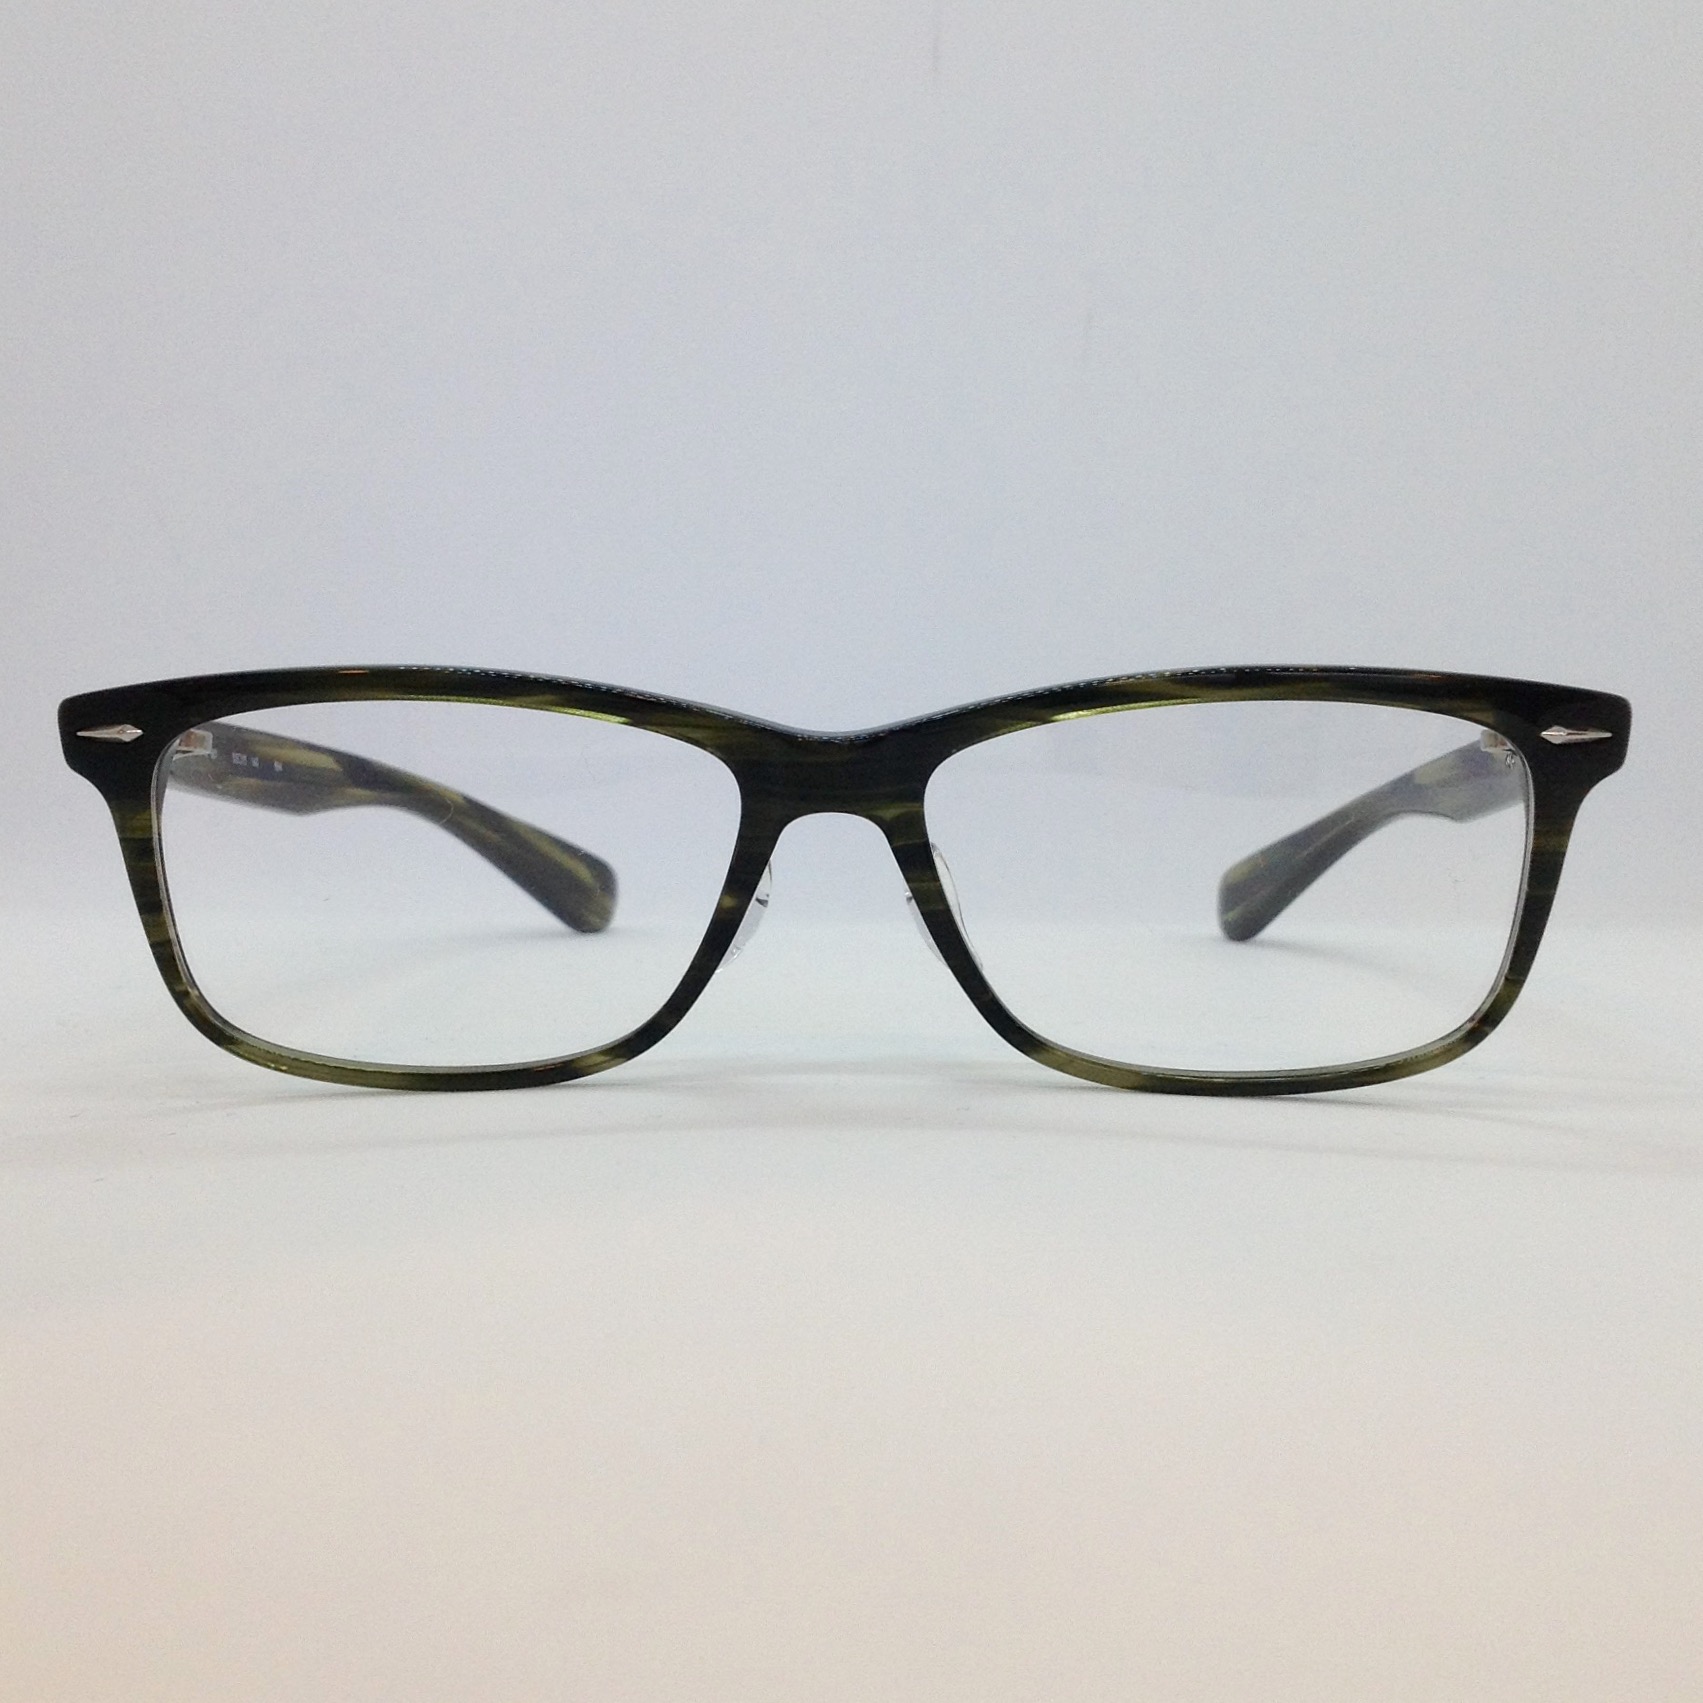 種類メガネ眼鏡 999.9 フォーナインズ - サングラス/メガネ